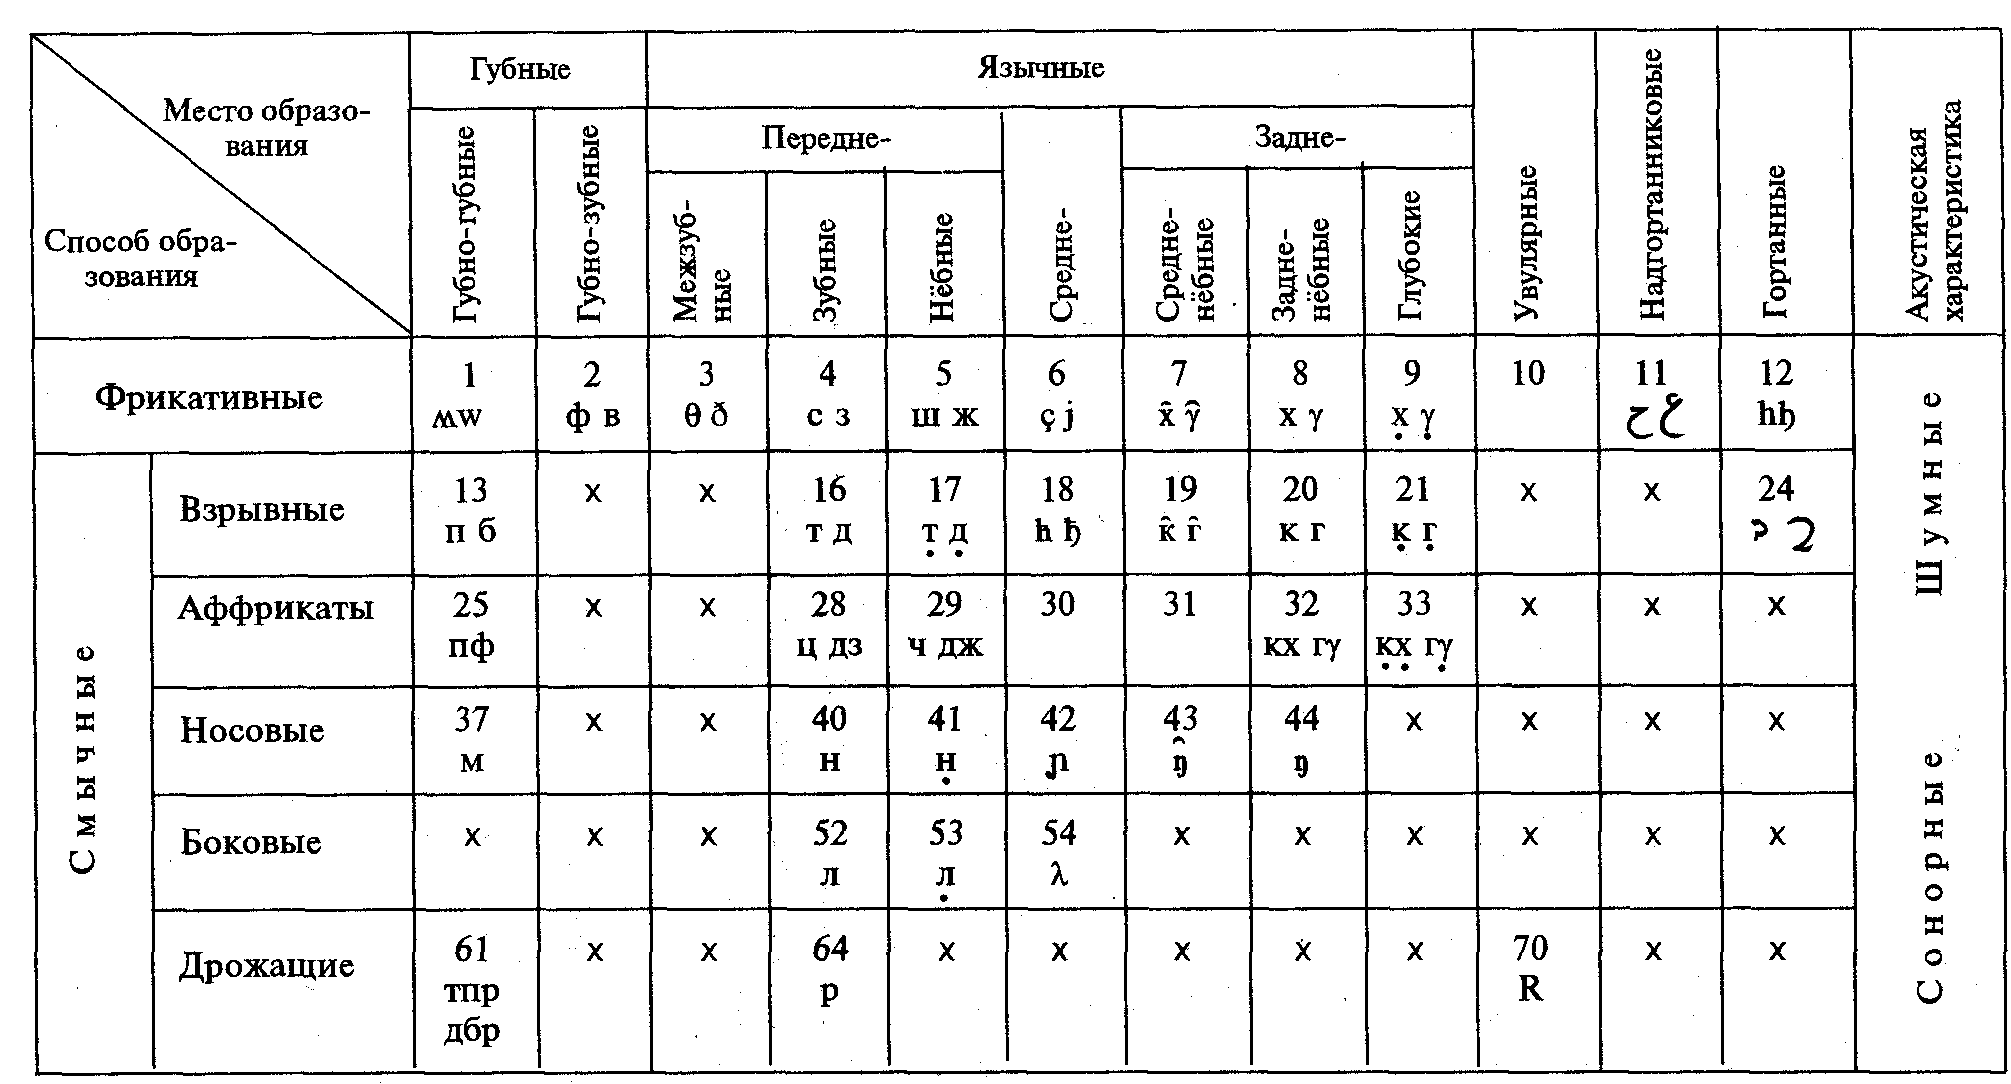 Глухие щелевые согласные. Классификация согласных звуков таблица Реформатский. Классификация гласных звуков таблица. Артикуляционная классификация согласных звуков таблица. Таблица классификации согласных звуков фонетика.